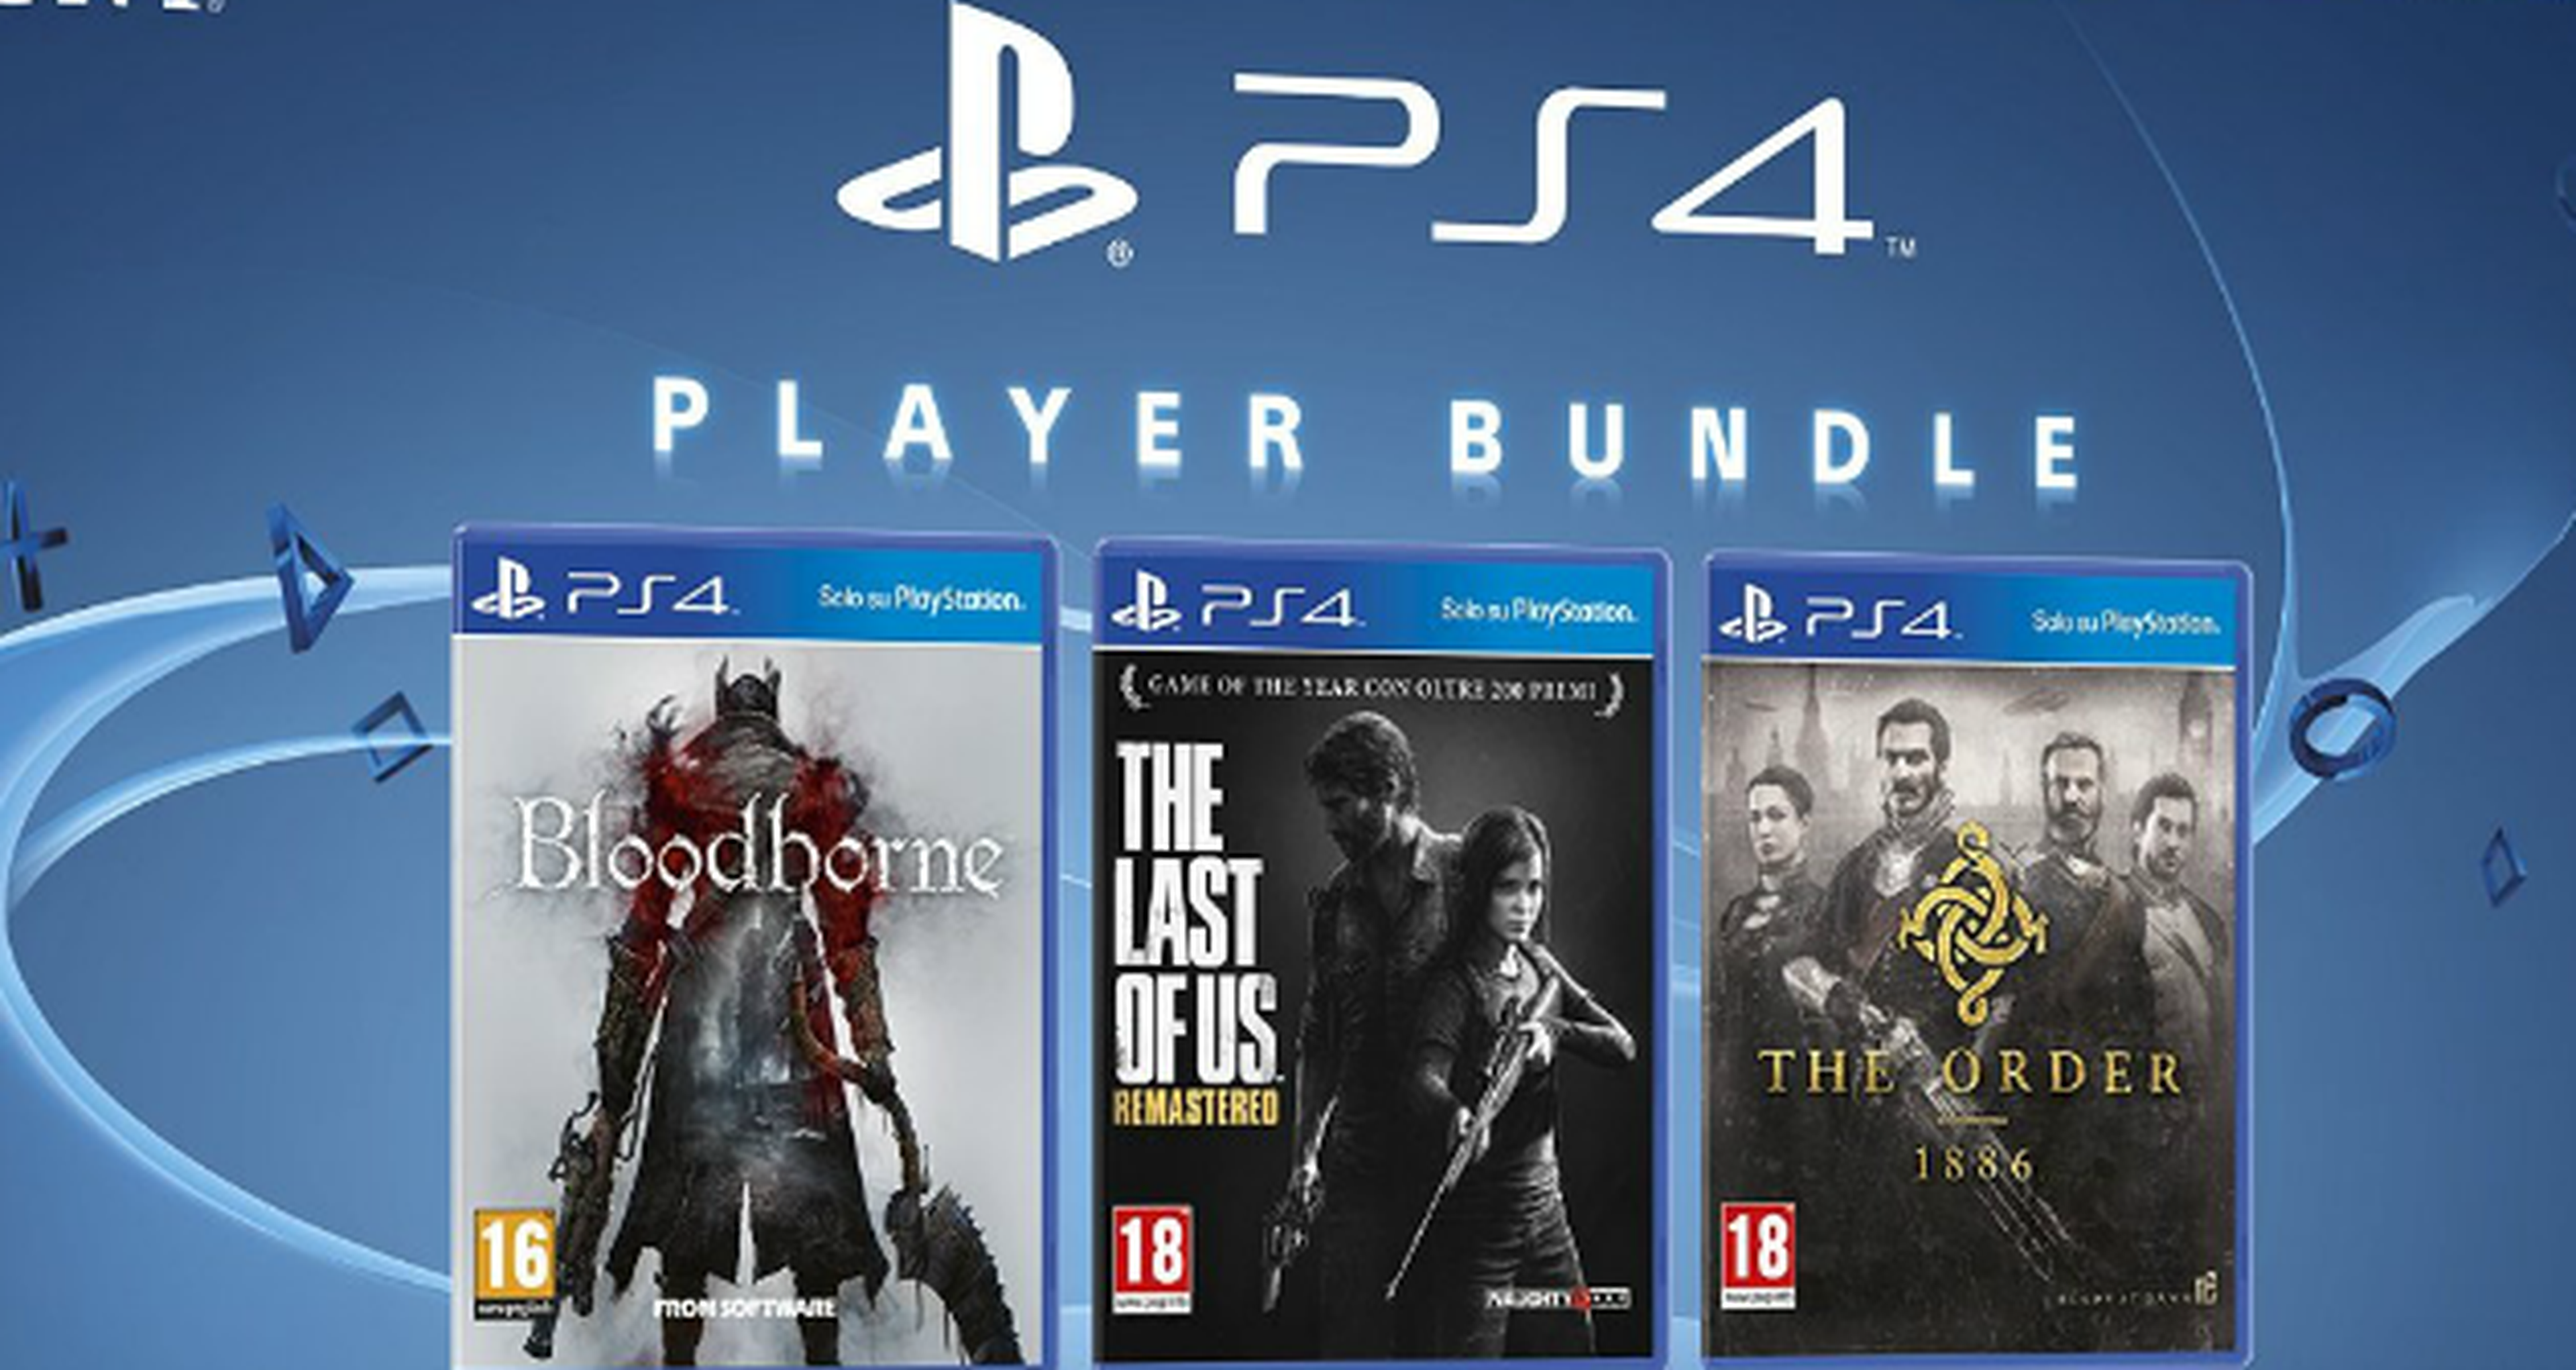 Filtrado un pack de PS4 con Bloodborne, The Last of Us y The Order 1886